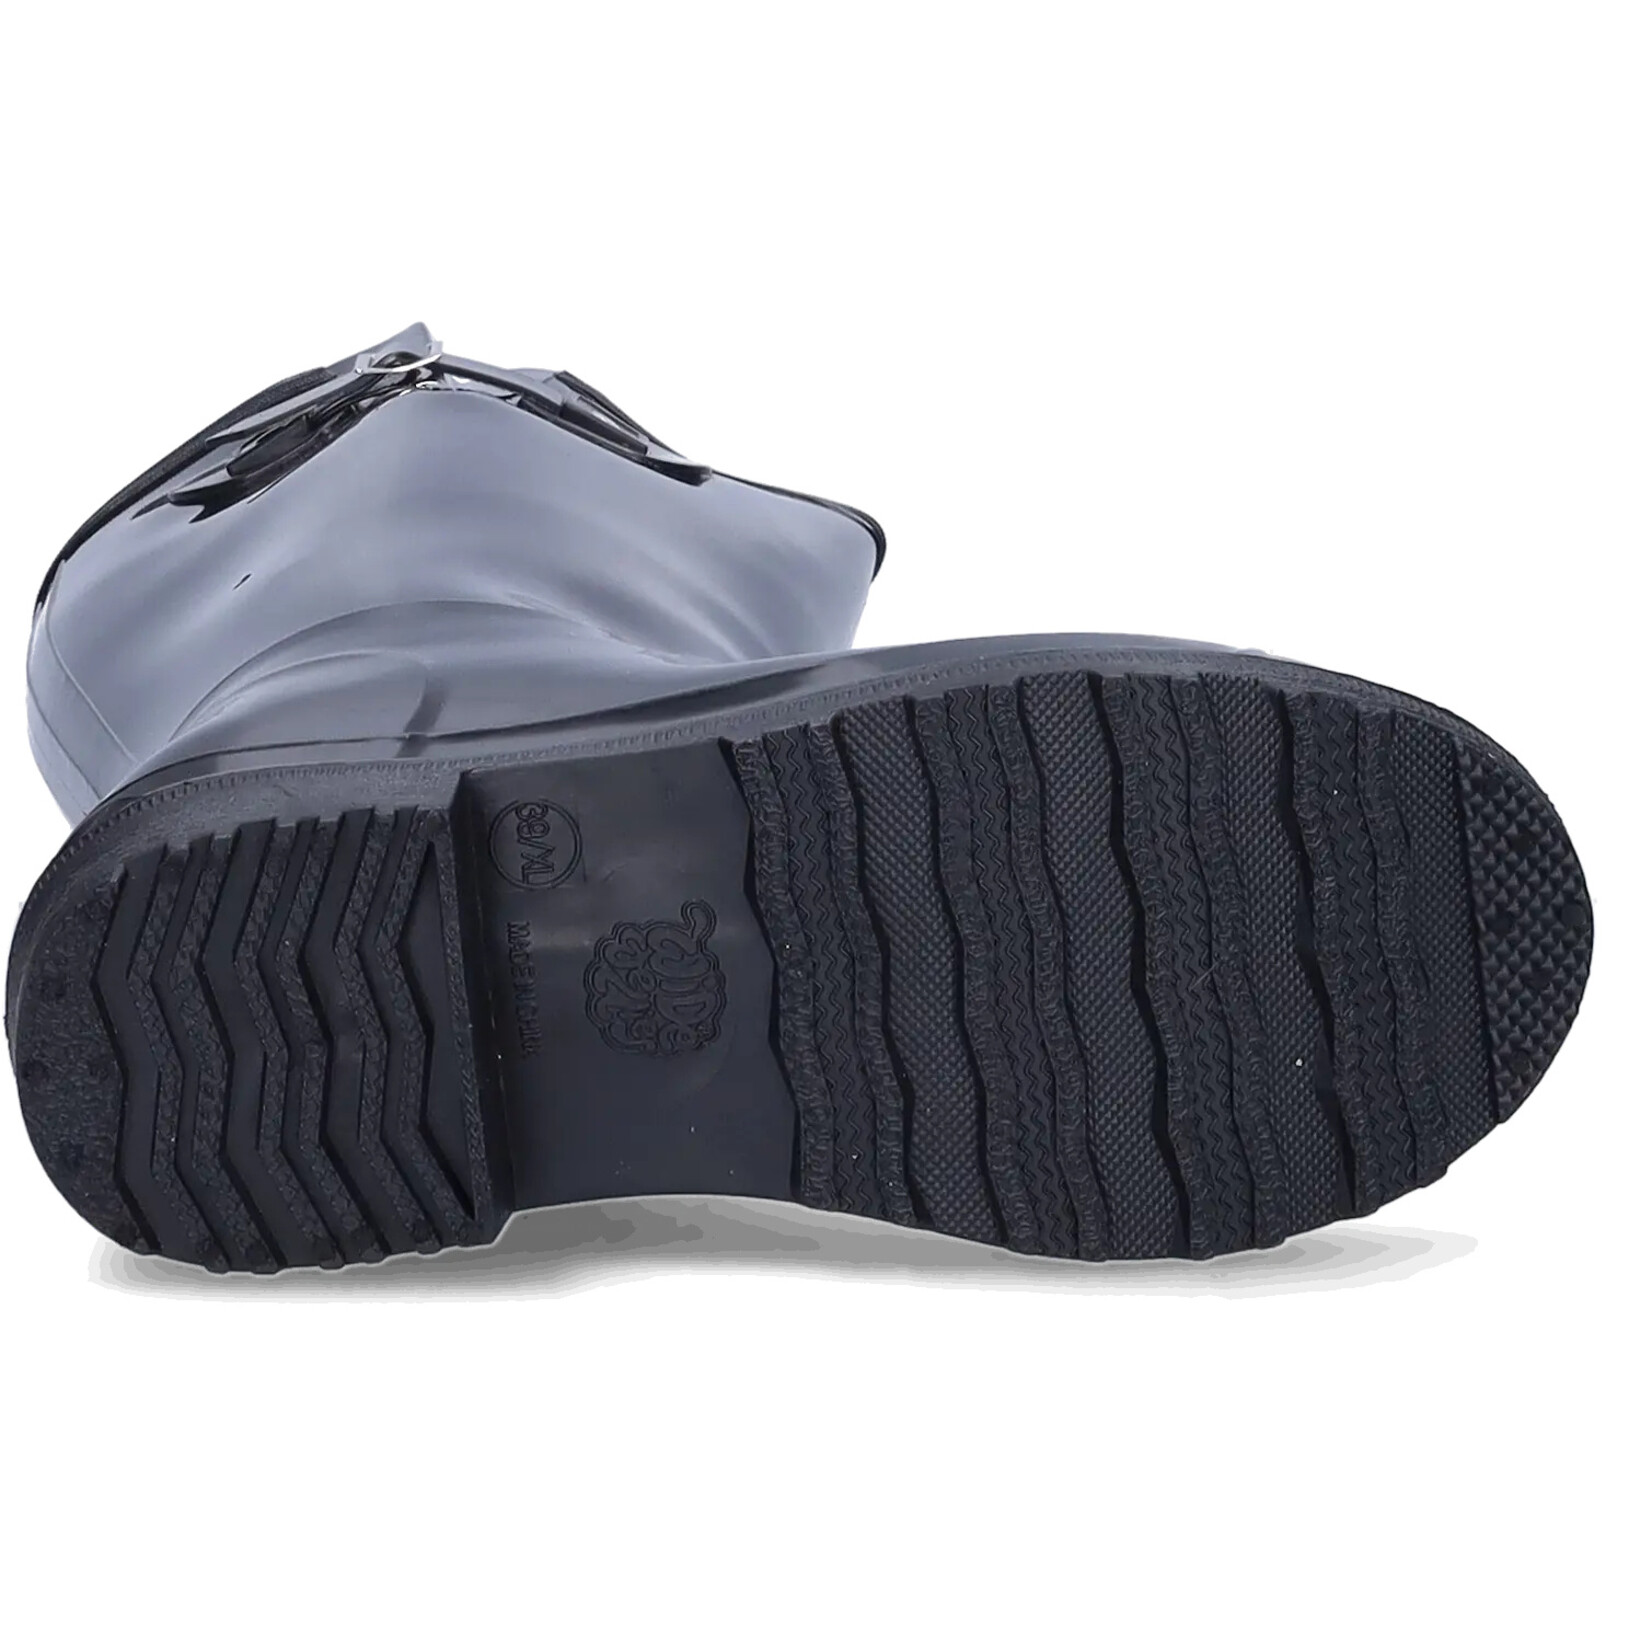 JJ Footwear Wellies - Black